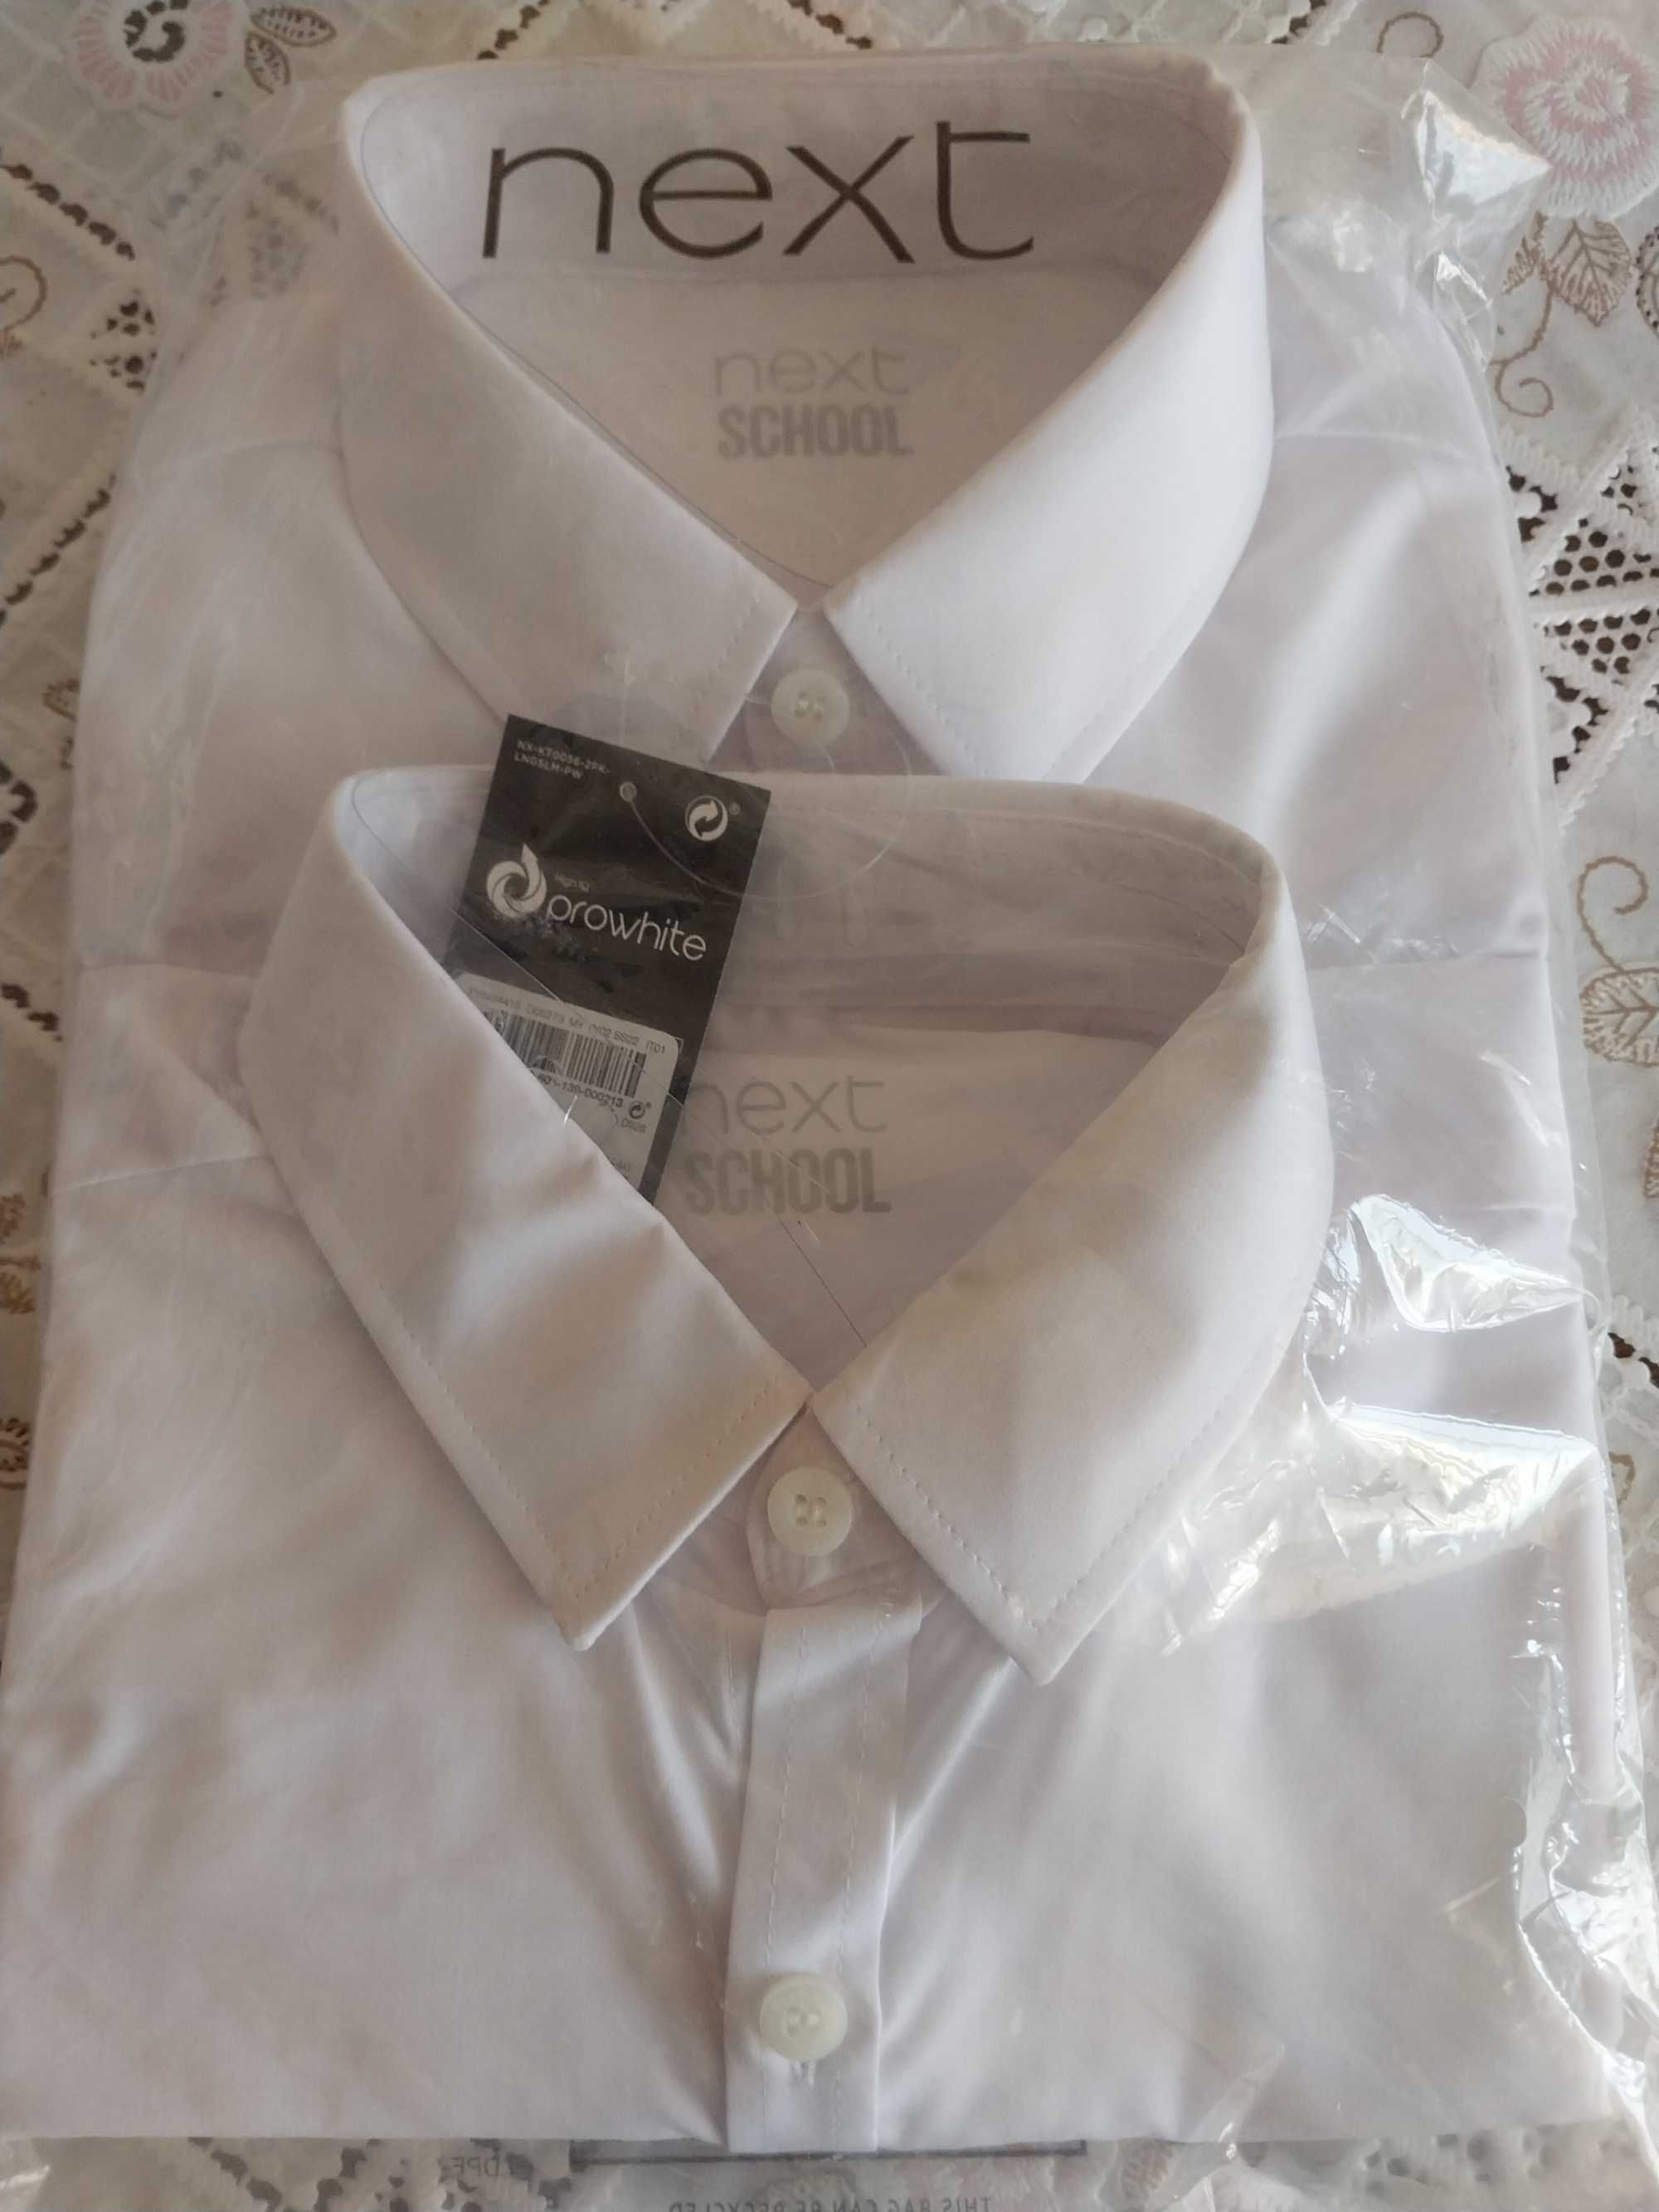 Сорочка шкільна с довгим рукавом, NEXT. Рубашка школьная. 11 р. 146 см